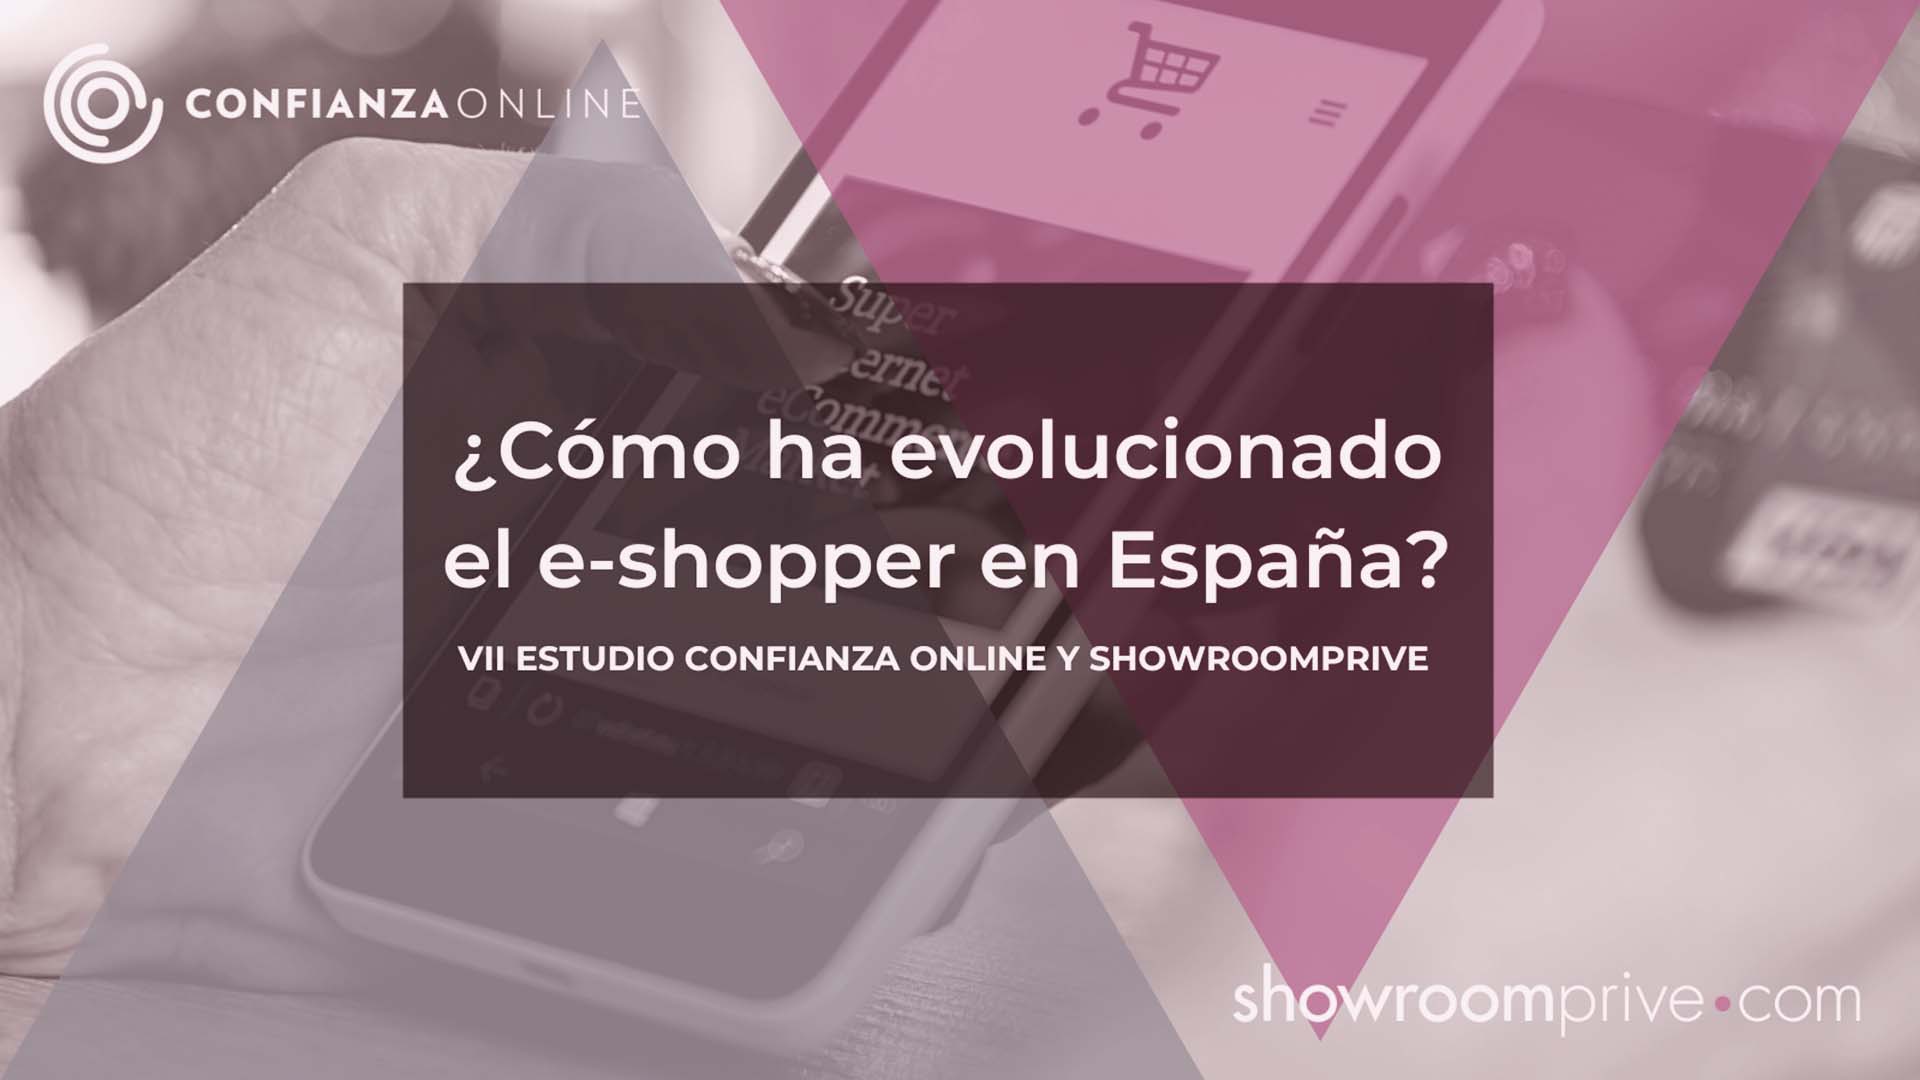 VII Estudio Confianza Online y Showroomprive